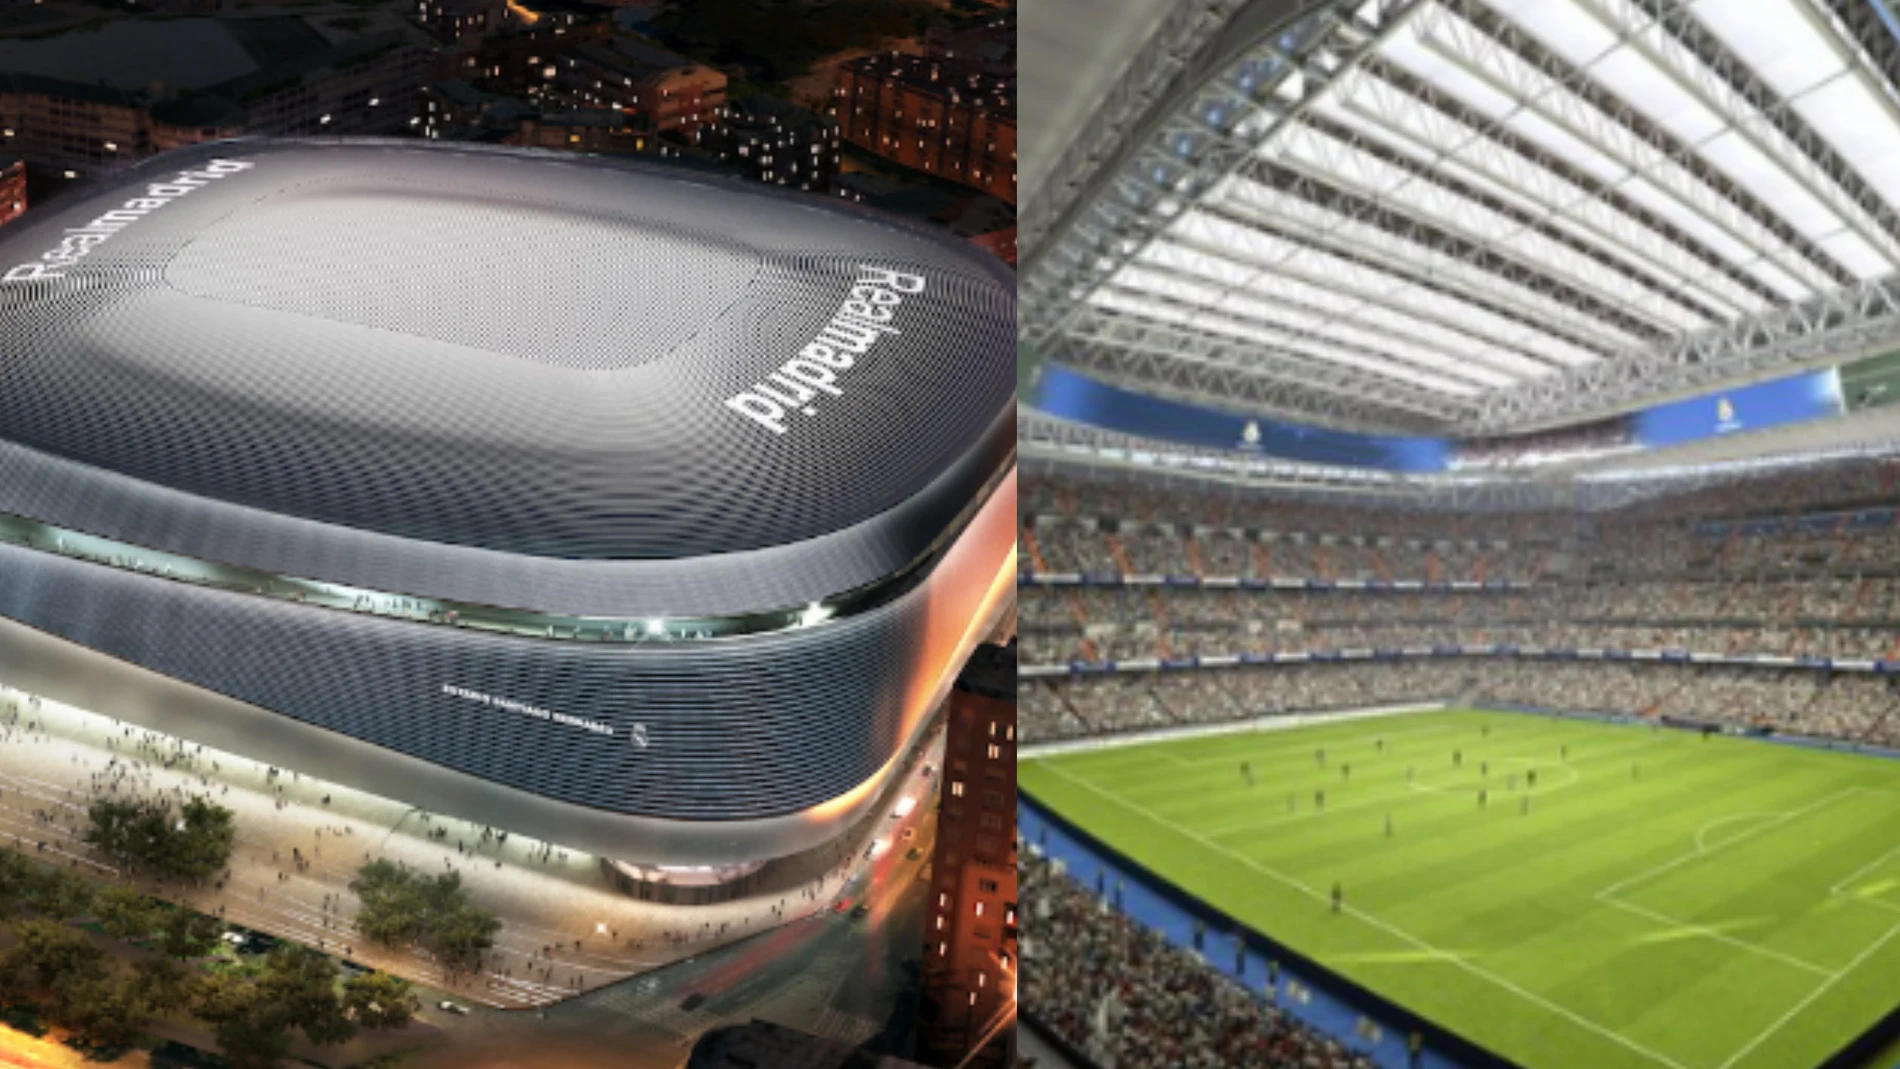 Sensores ópticos, sala de vigilancia...: los secretos del techo del Bernabéu que lo convertirán en una caldera ante el City